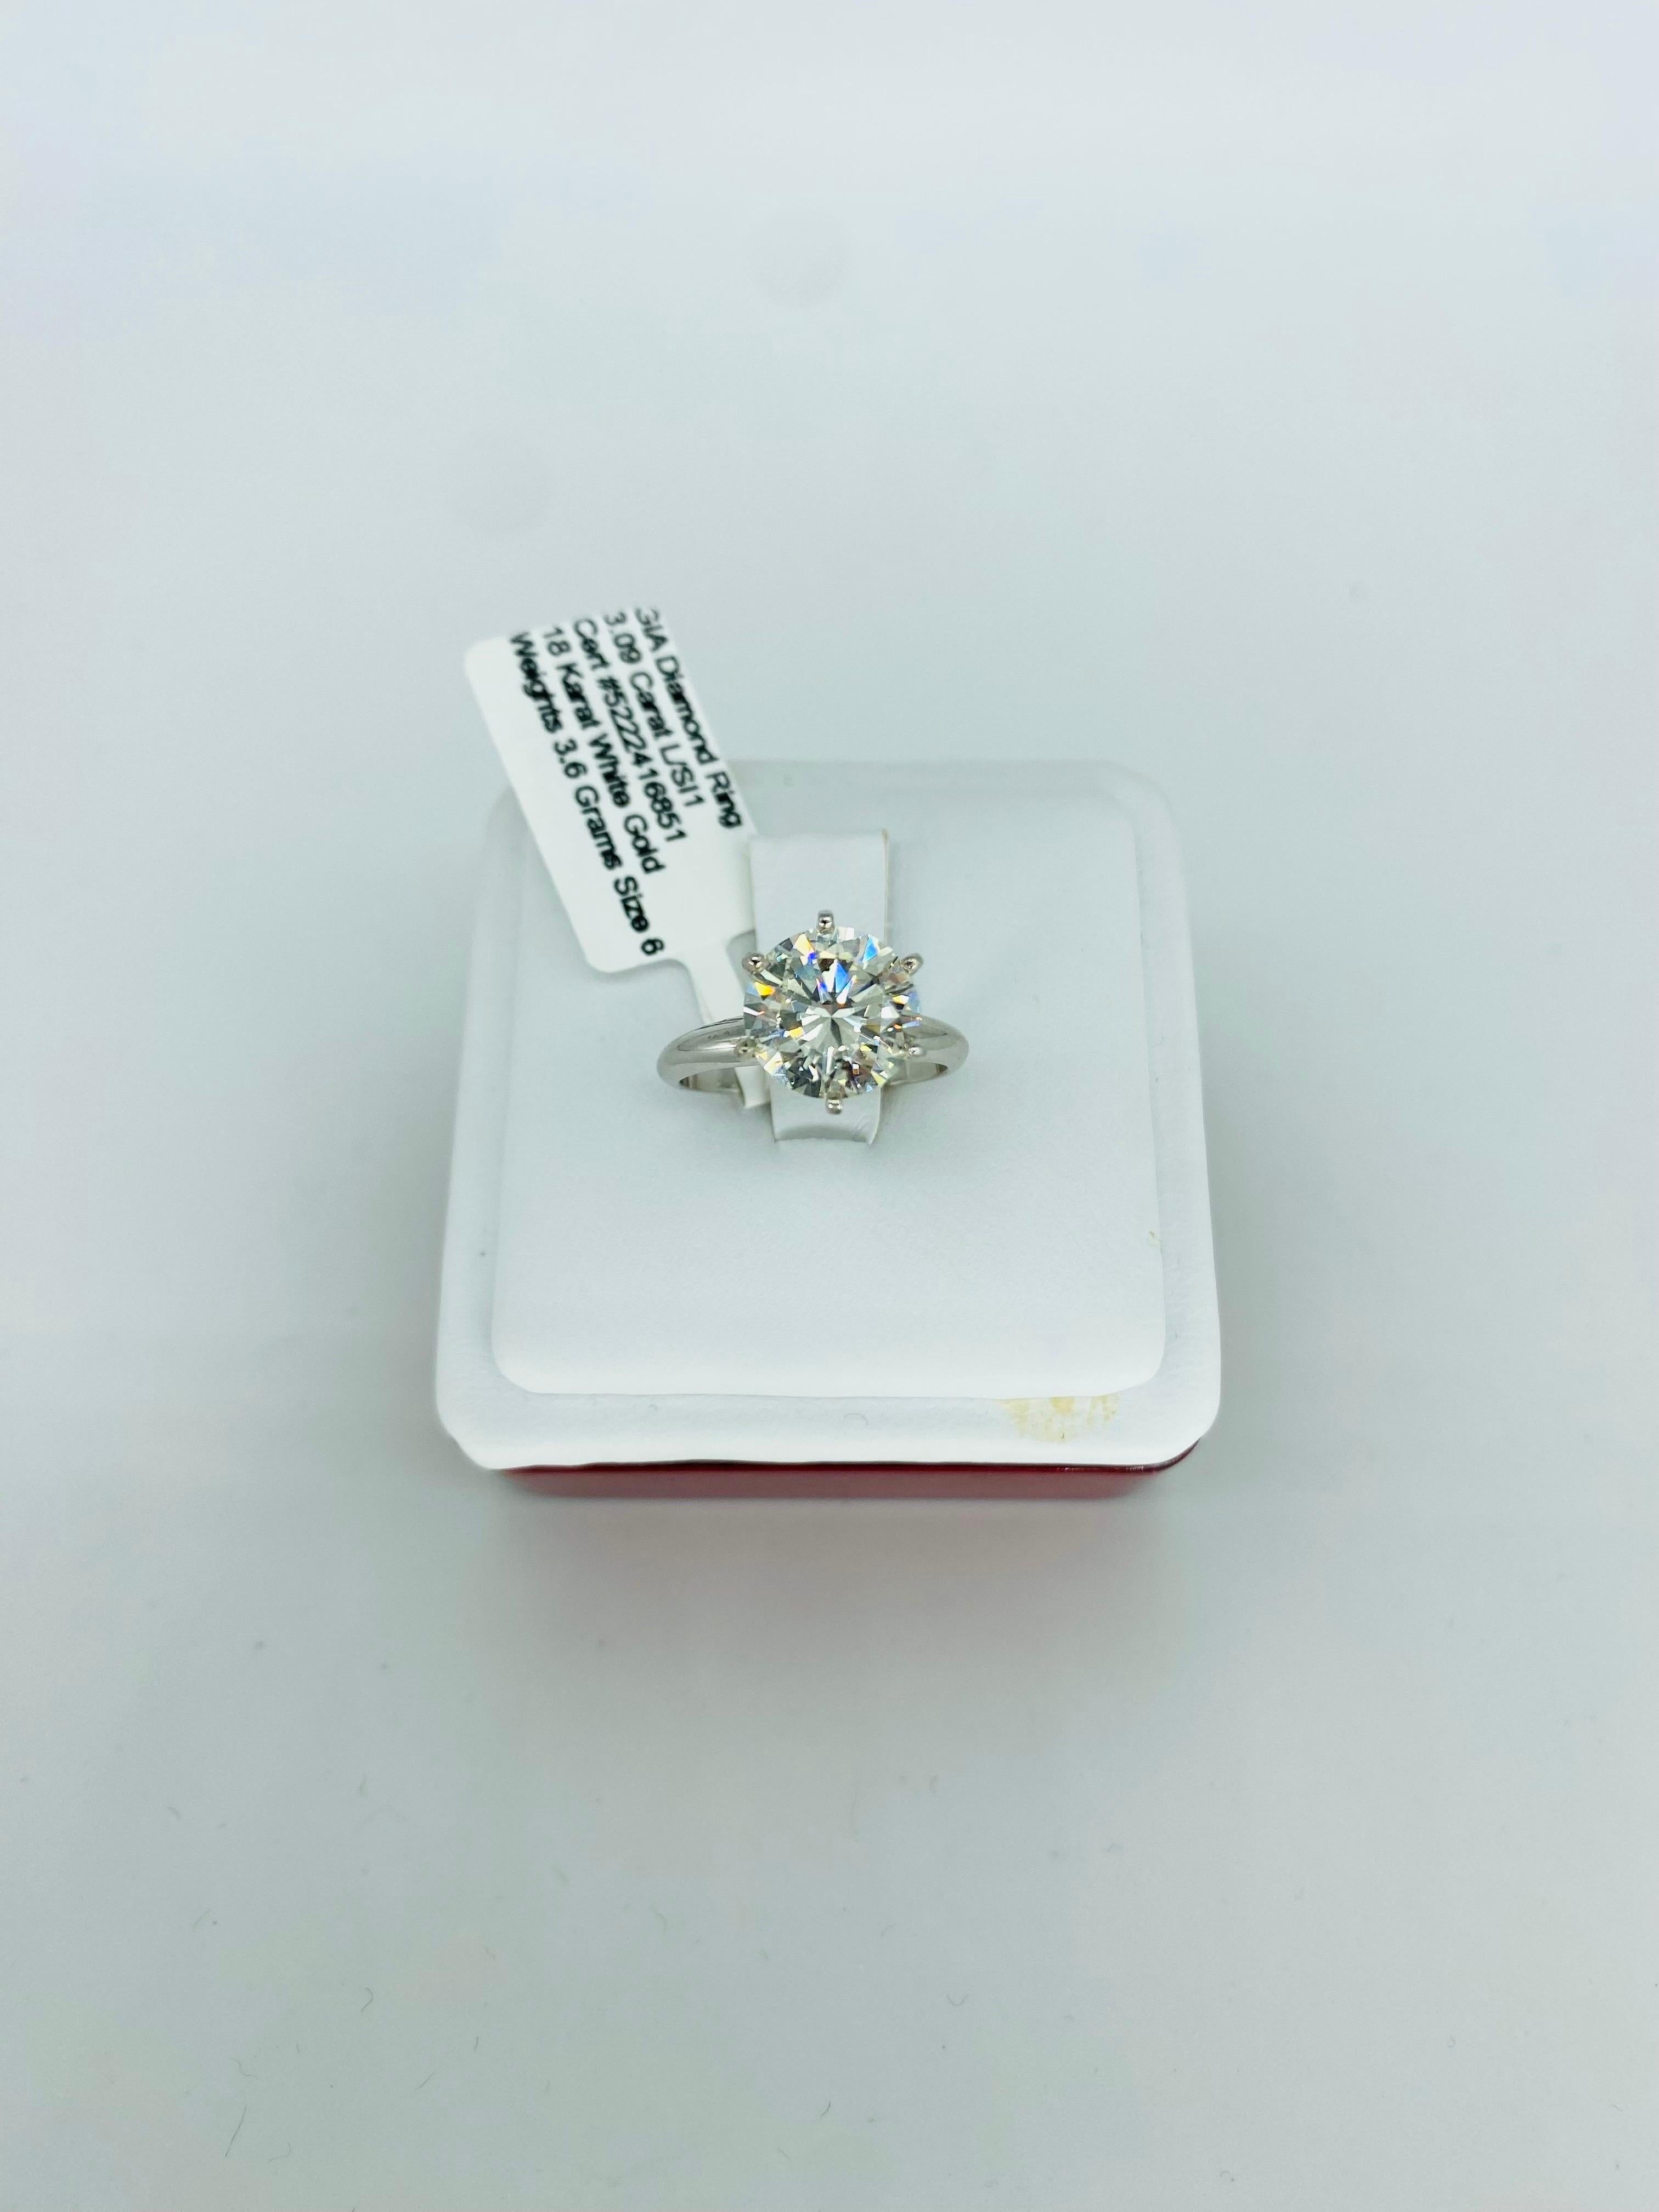 3.5 carat round engagement ring